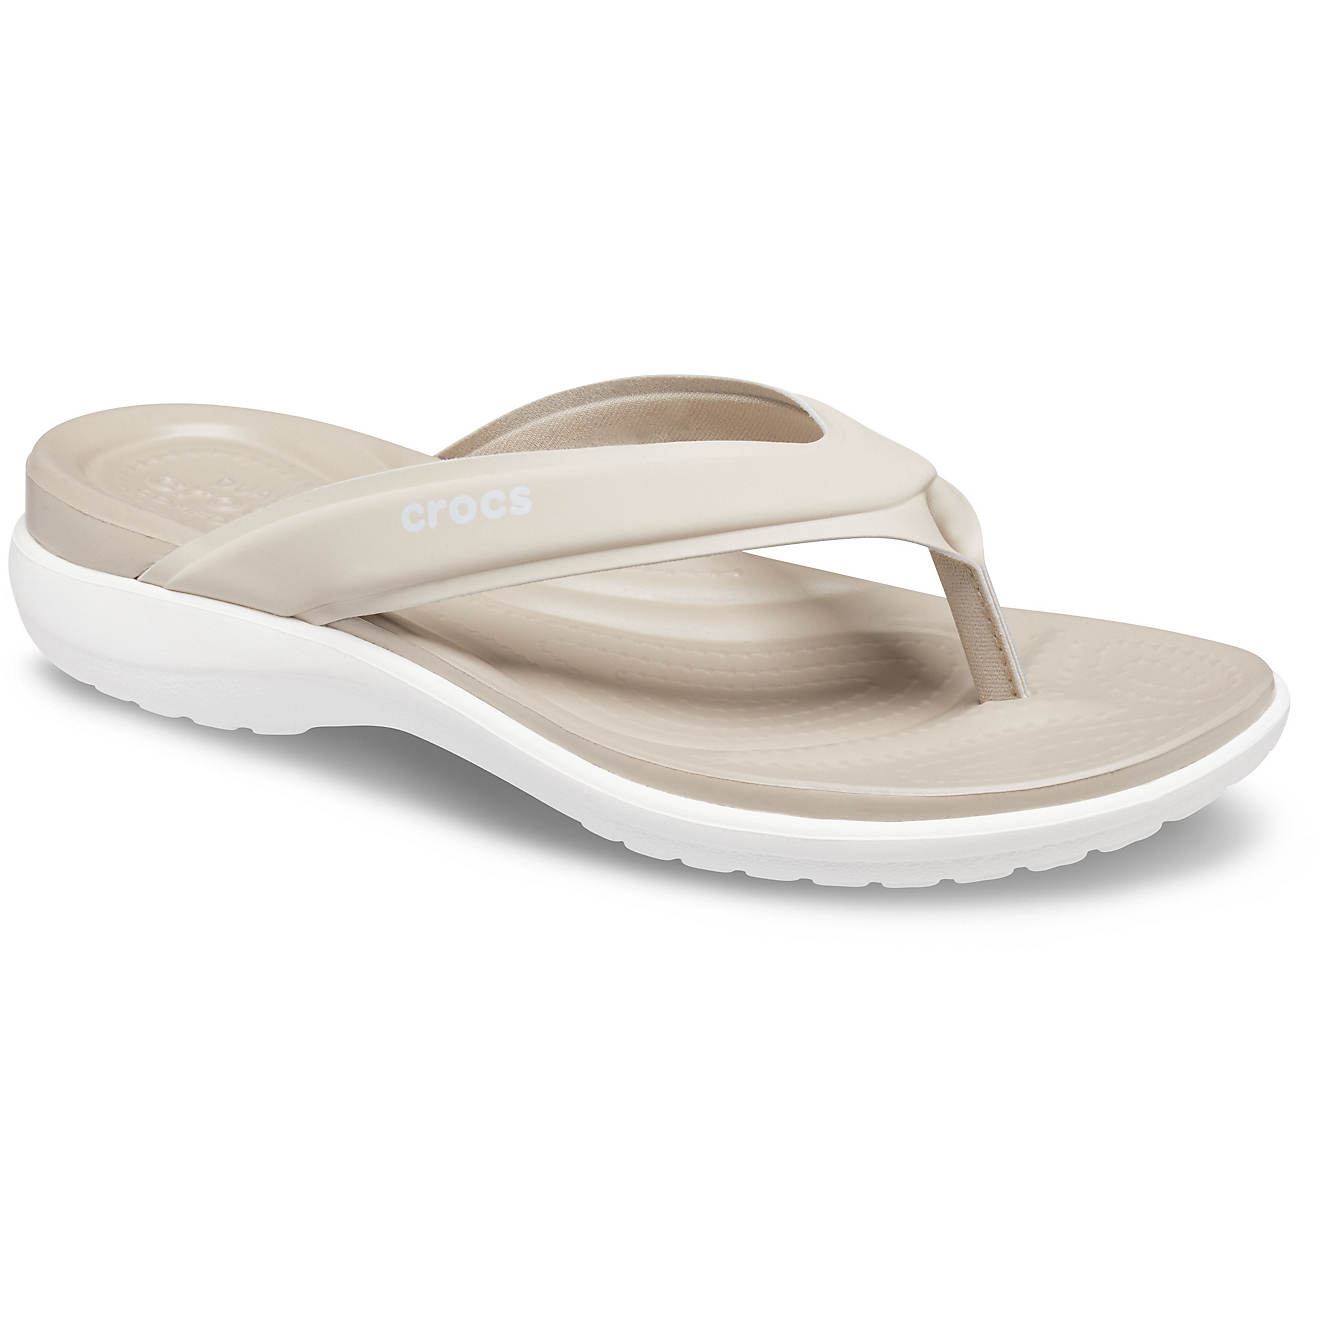 Crocs Women's Capri Sporty Flip Flop Sandals                                                                                     - view number 1